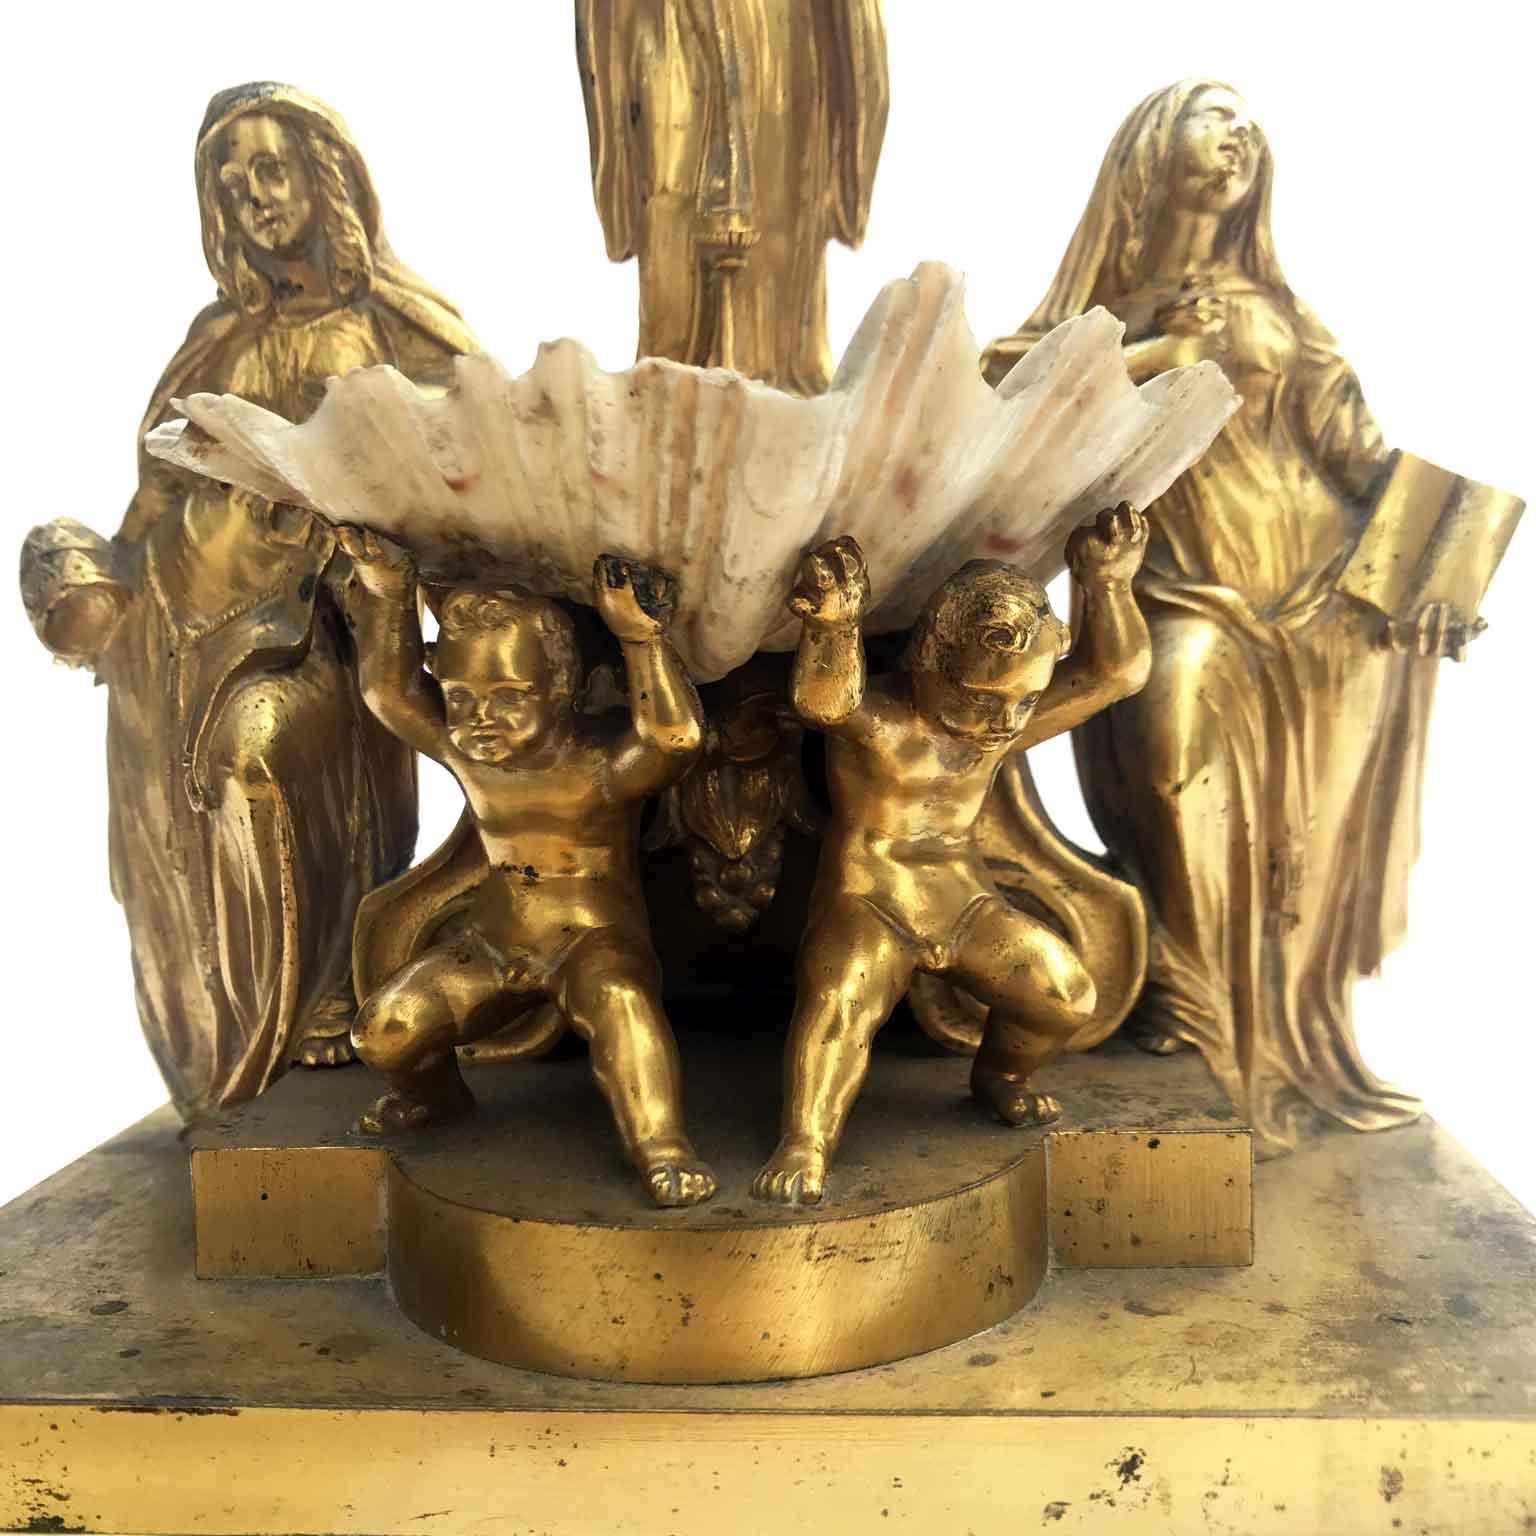 Italienische vergoldete Heilige Wasserkanne des 19. Jahrhunderts mit Putten, Engeln und Muscheln (Europäisch)